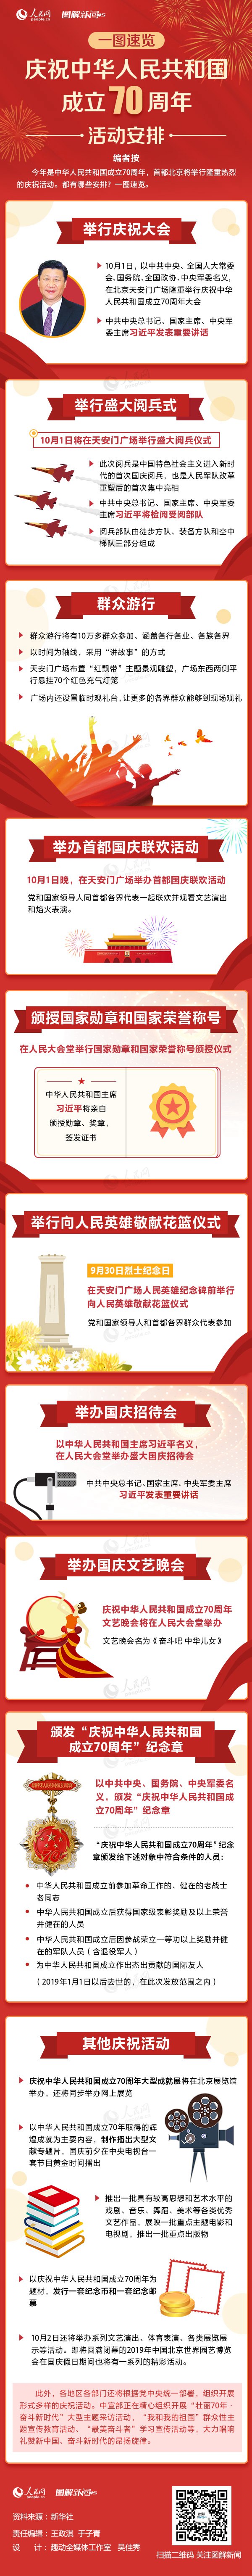 一图速览庆祝中华人民共和国成立70周年活动安排